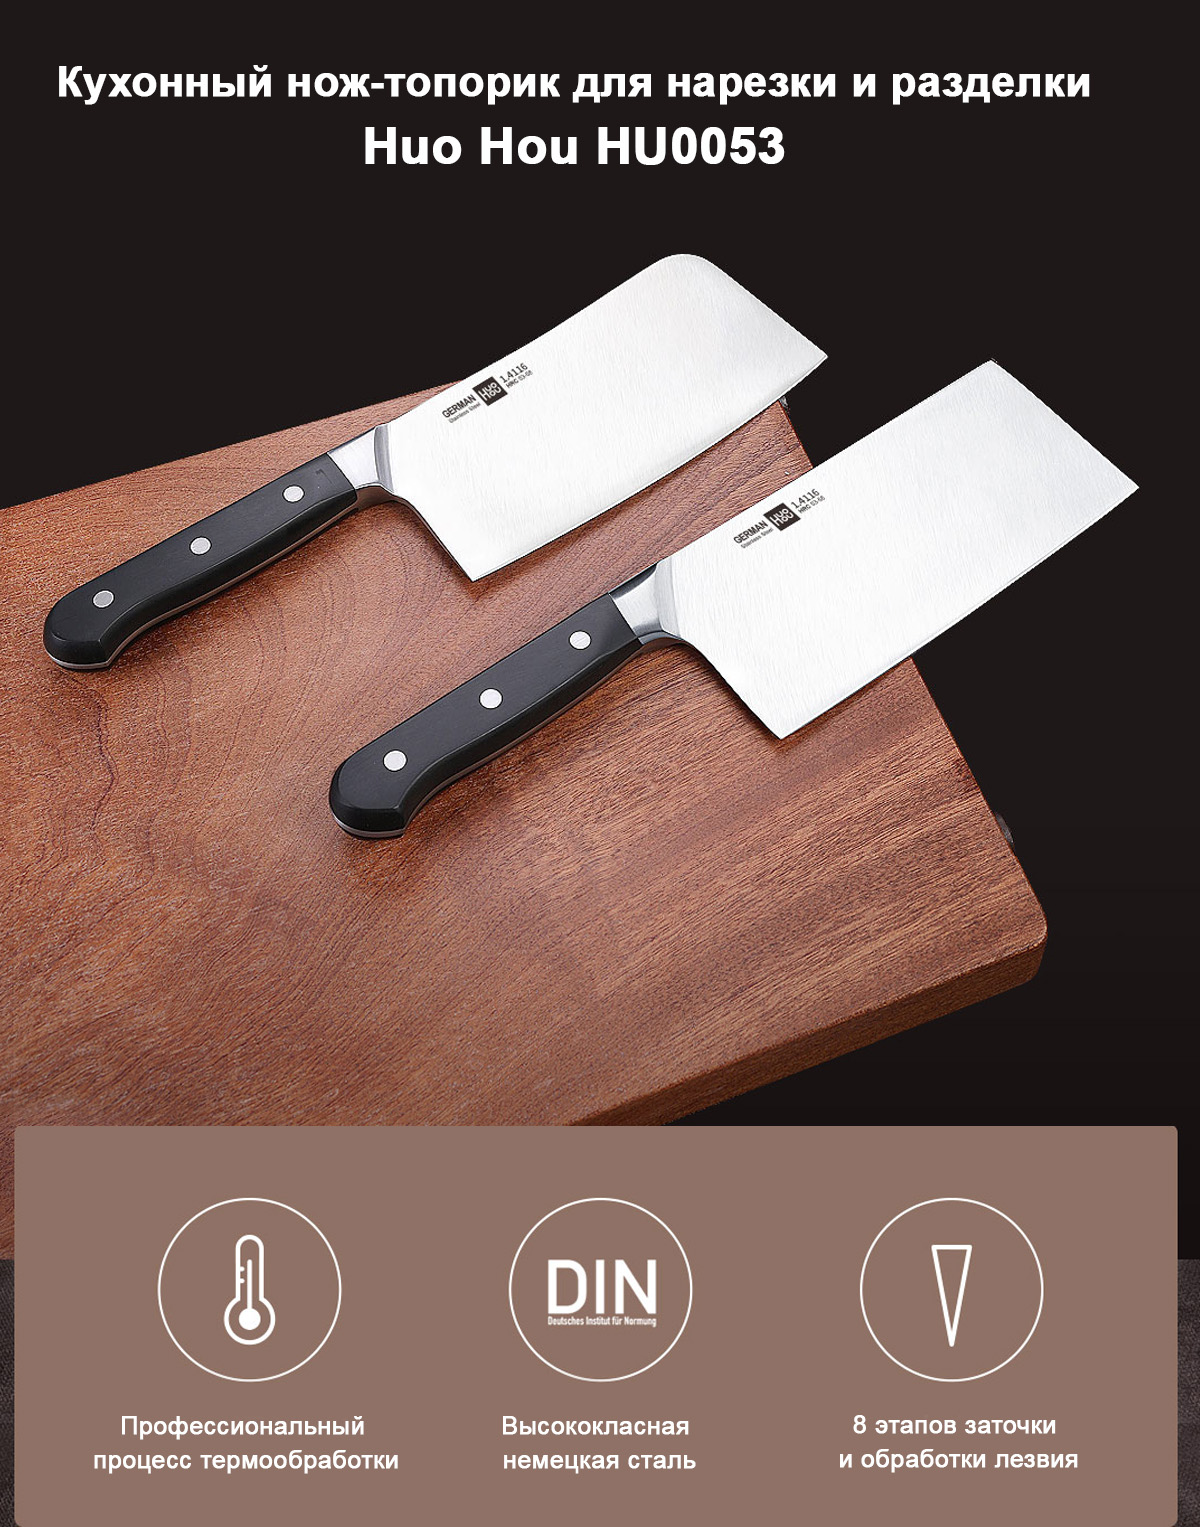 Кухонный нож-топорик для нарезки и разделки Huo Hou (HU0053)